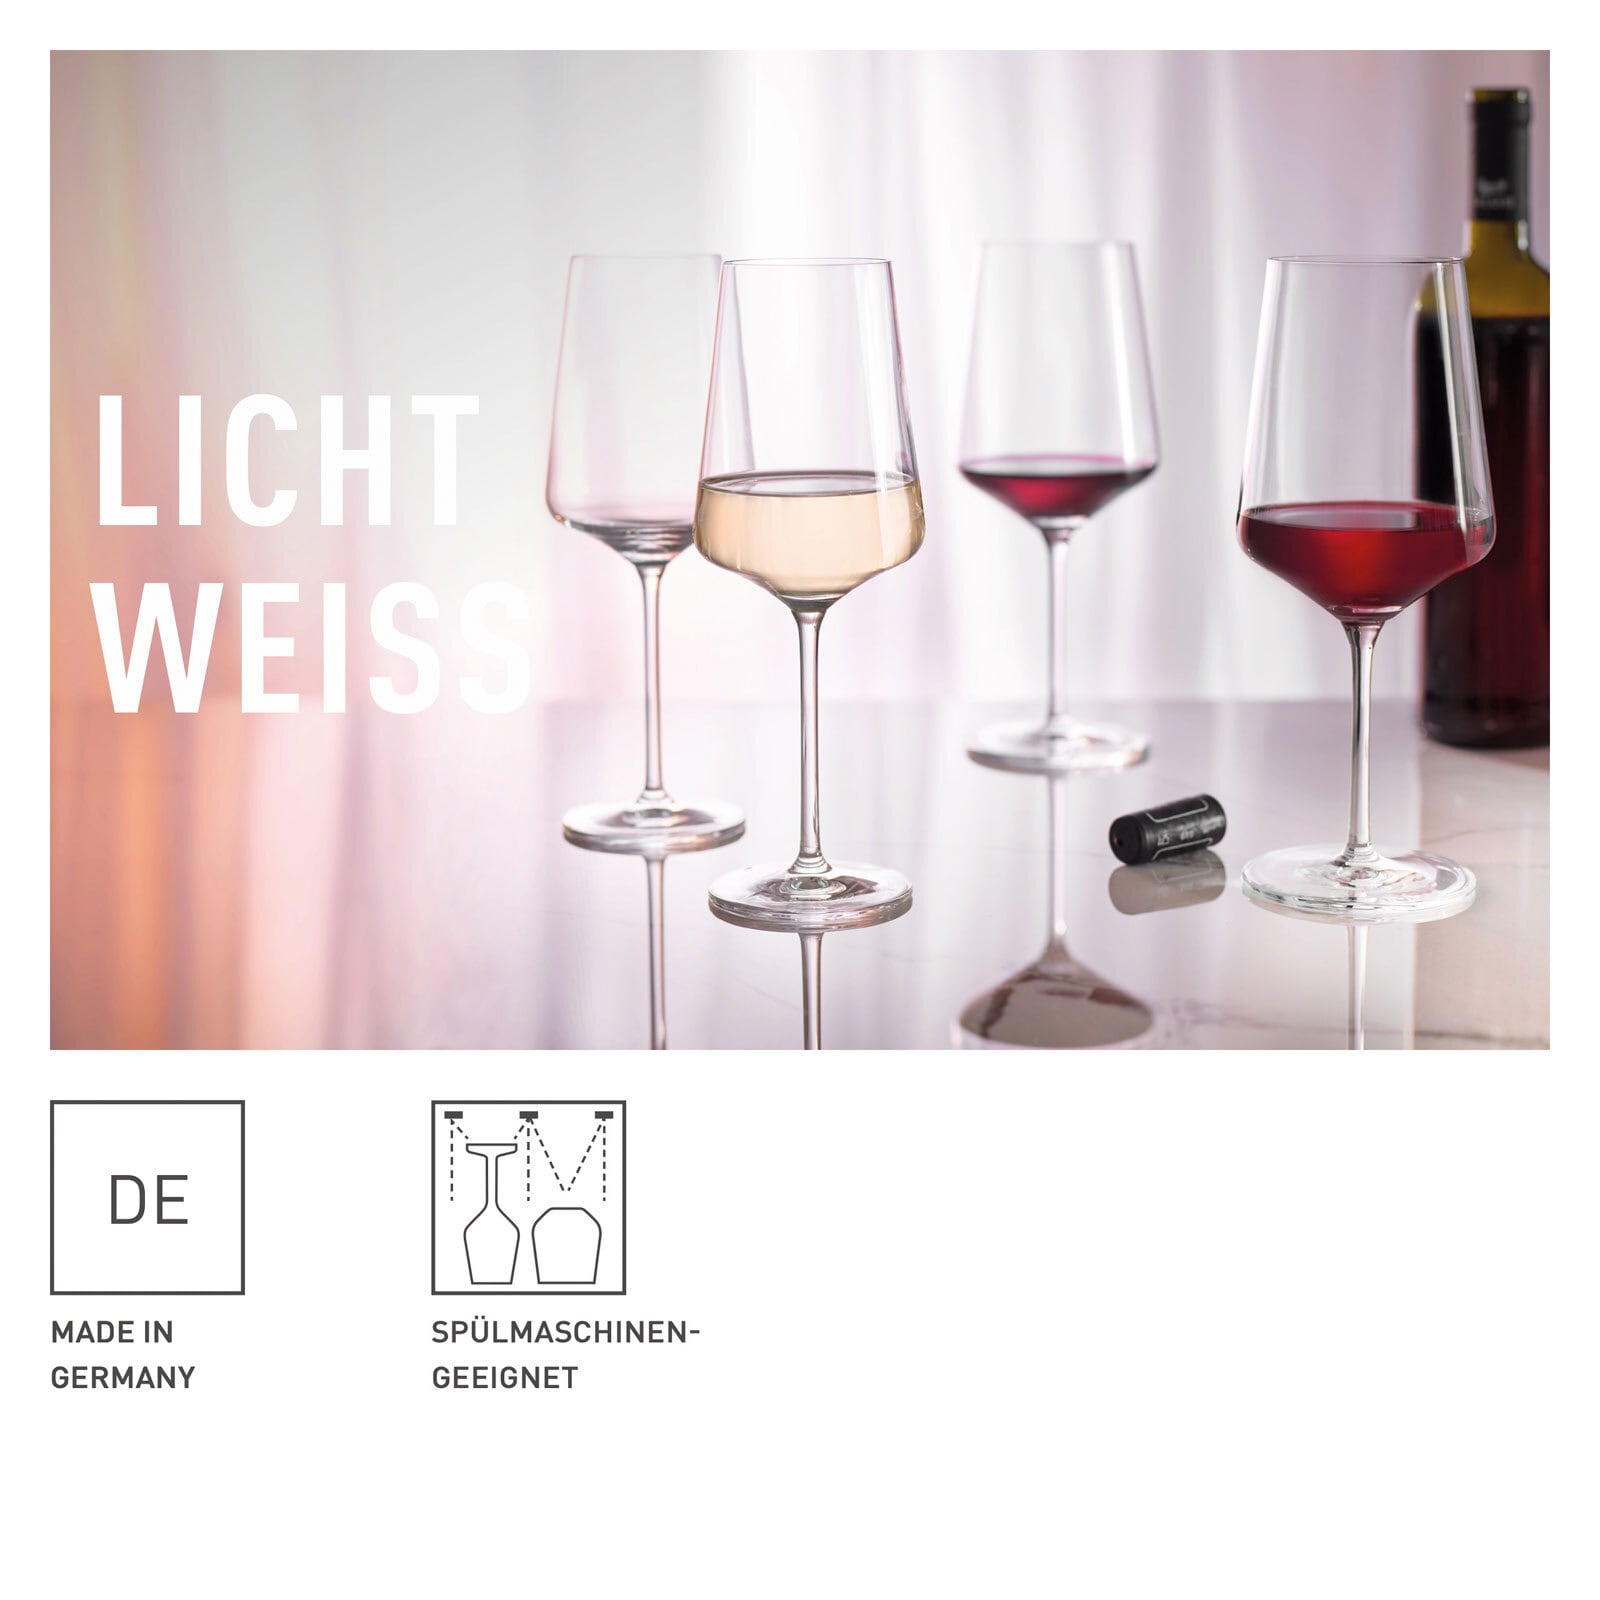 RITZENHOFF Weinglas Set LICHTWEISS 8-teilig